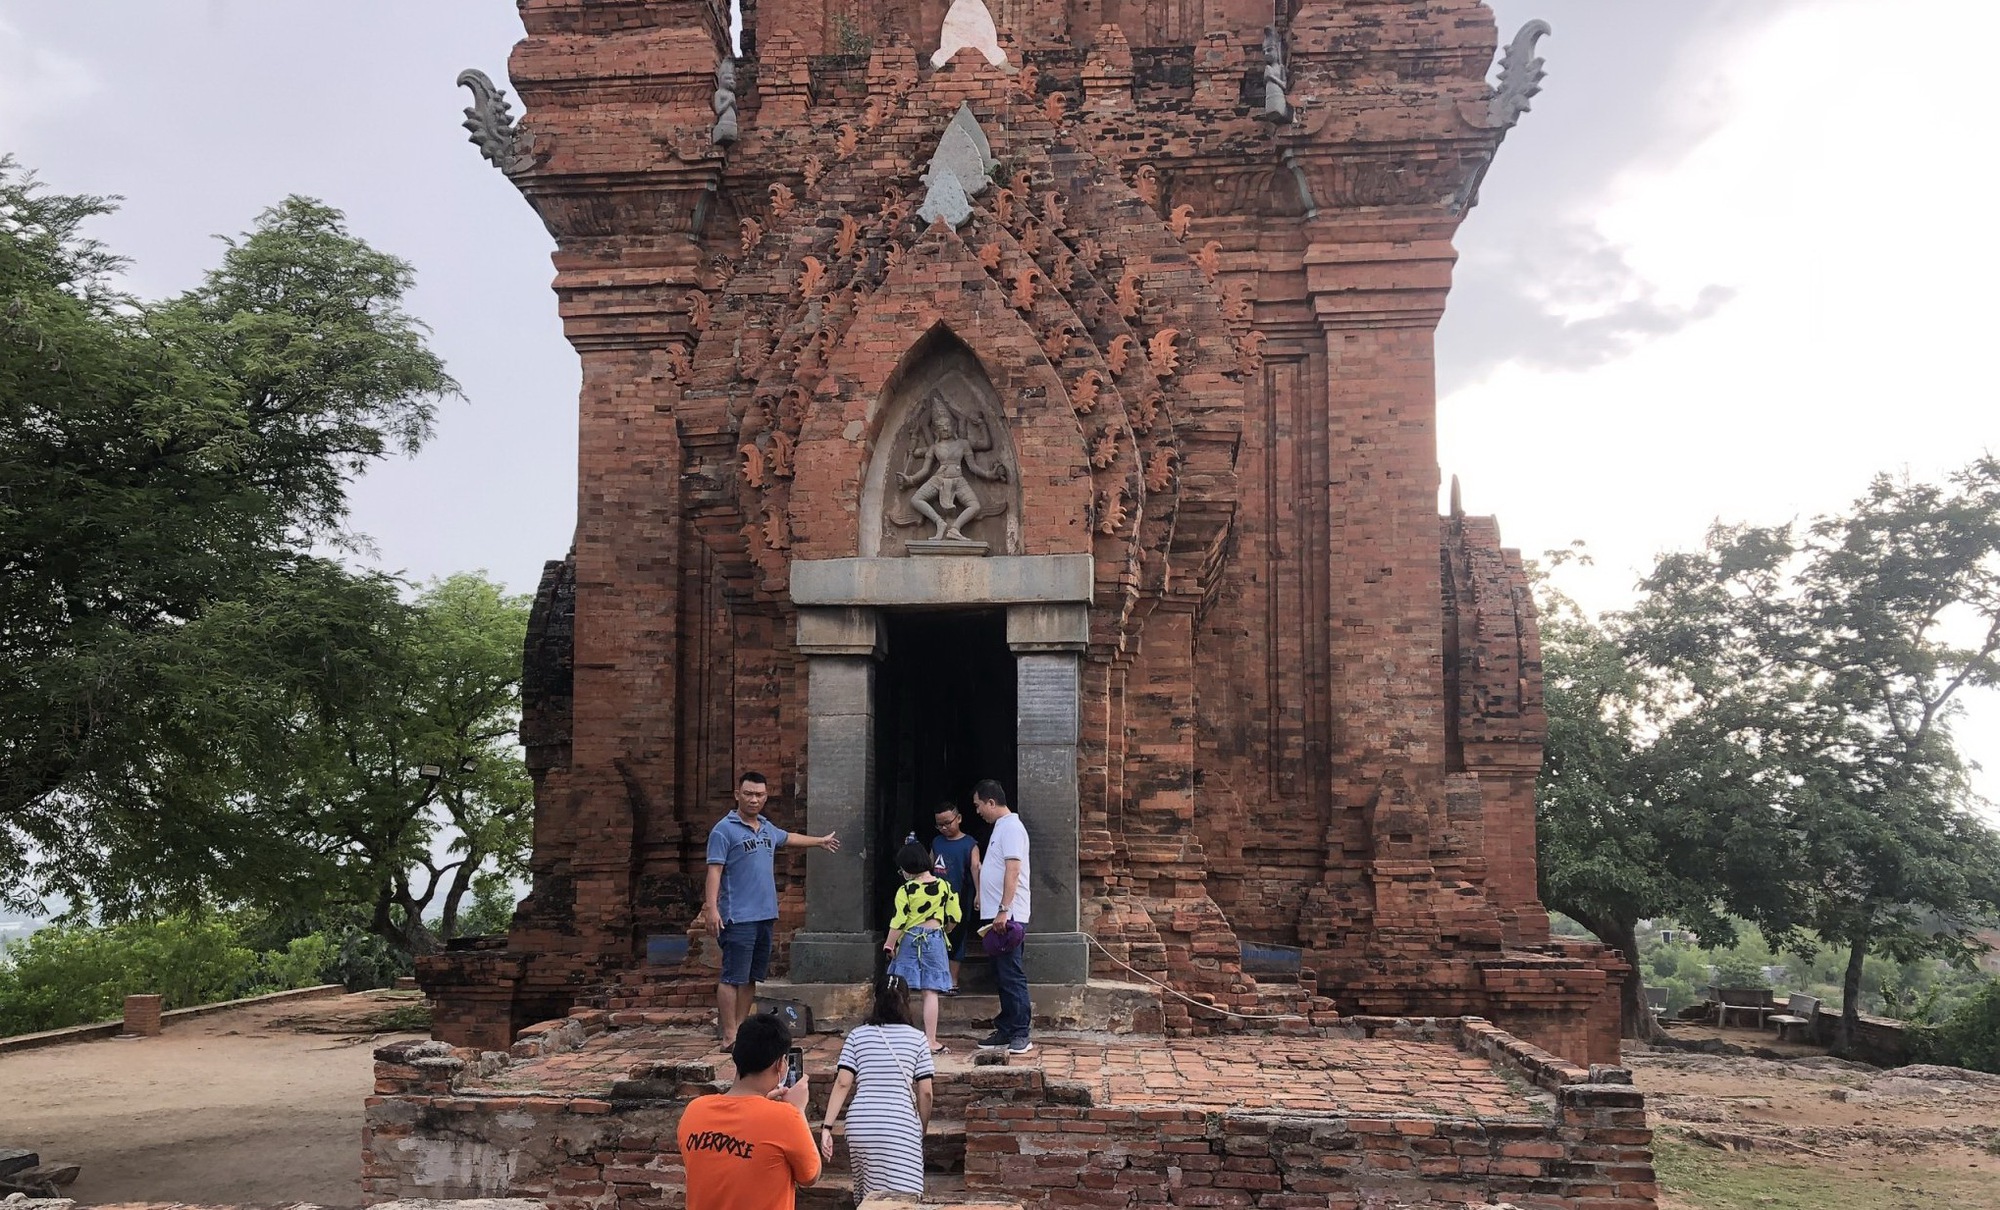 Tháp Pô Klong Garai và kiến trúc độc đáo của người Chăm theo đạo Bàlamôn ở Ninh Thuận - Ảnh 3.